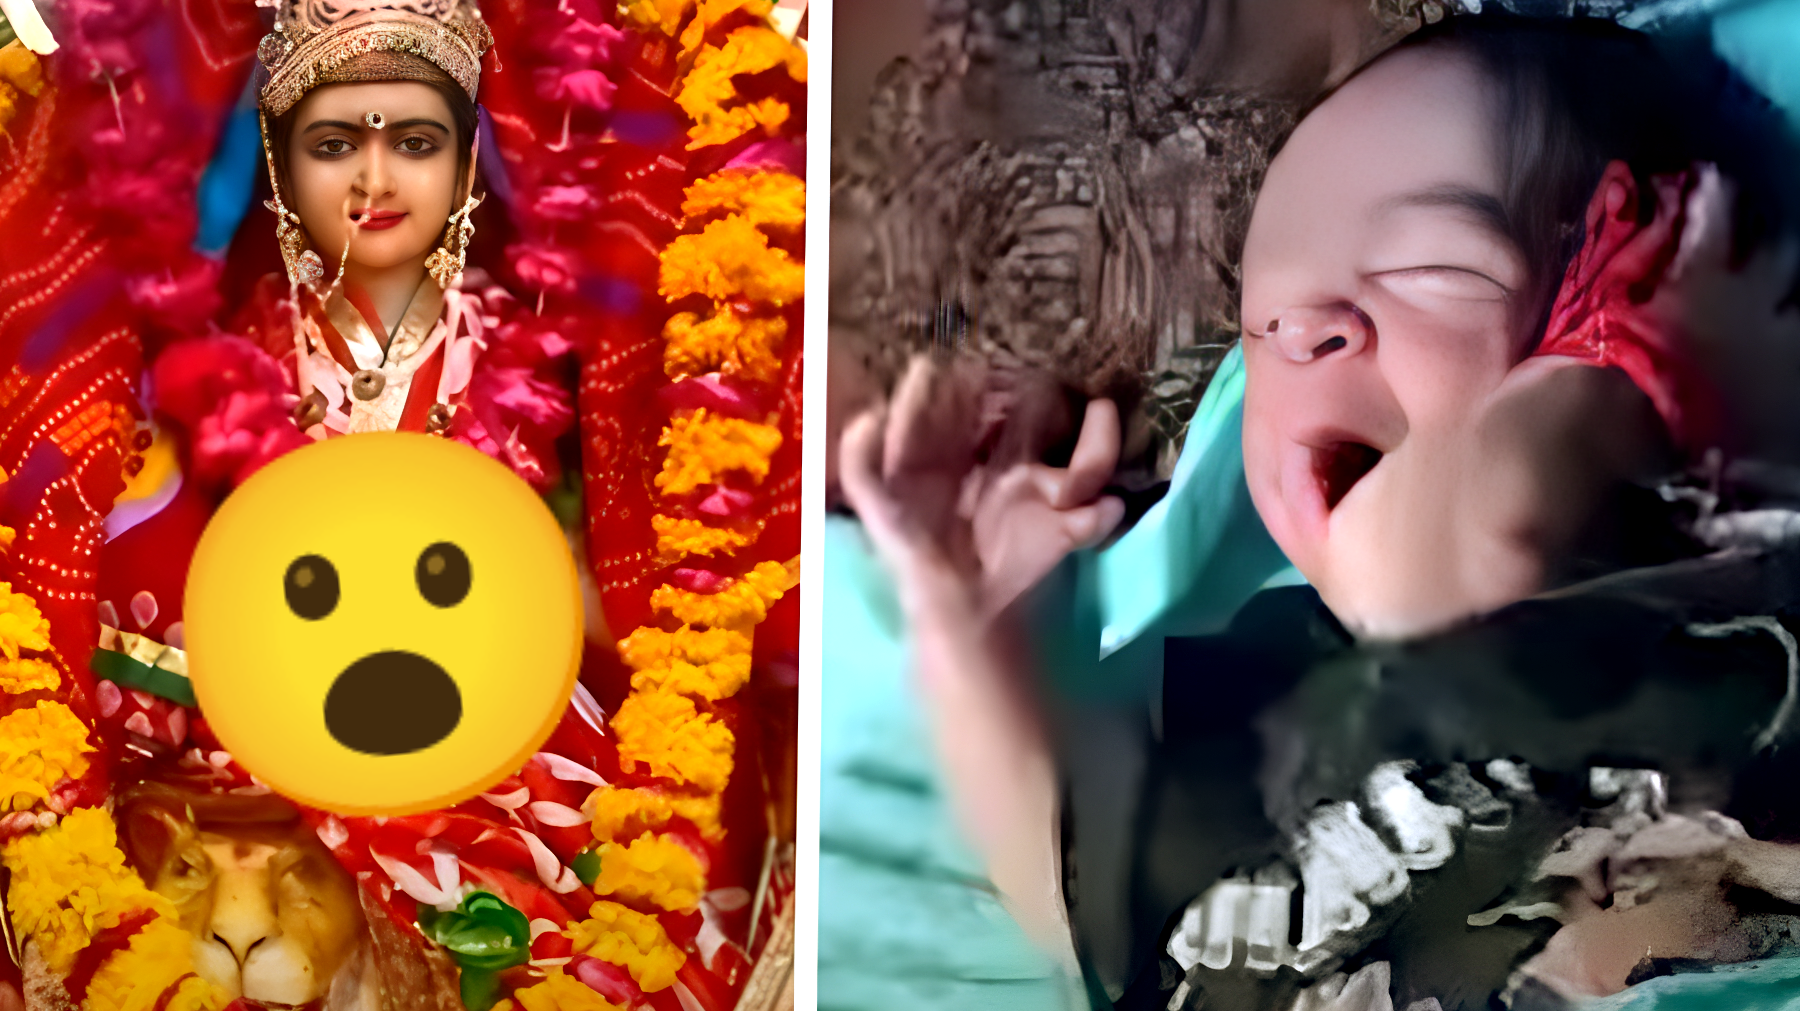 La bambina indiana che ha 26 dita: è la reincarnazione di una divinità?